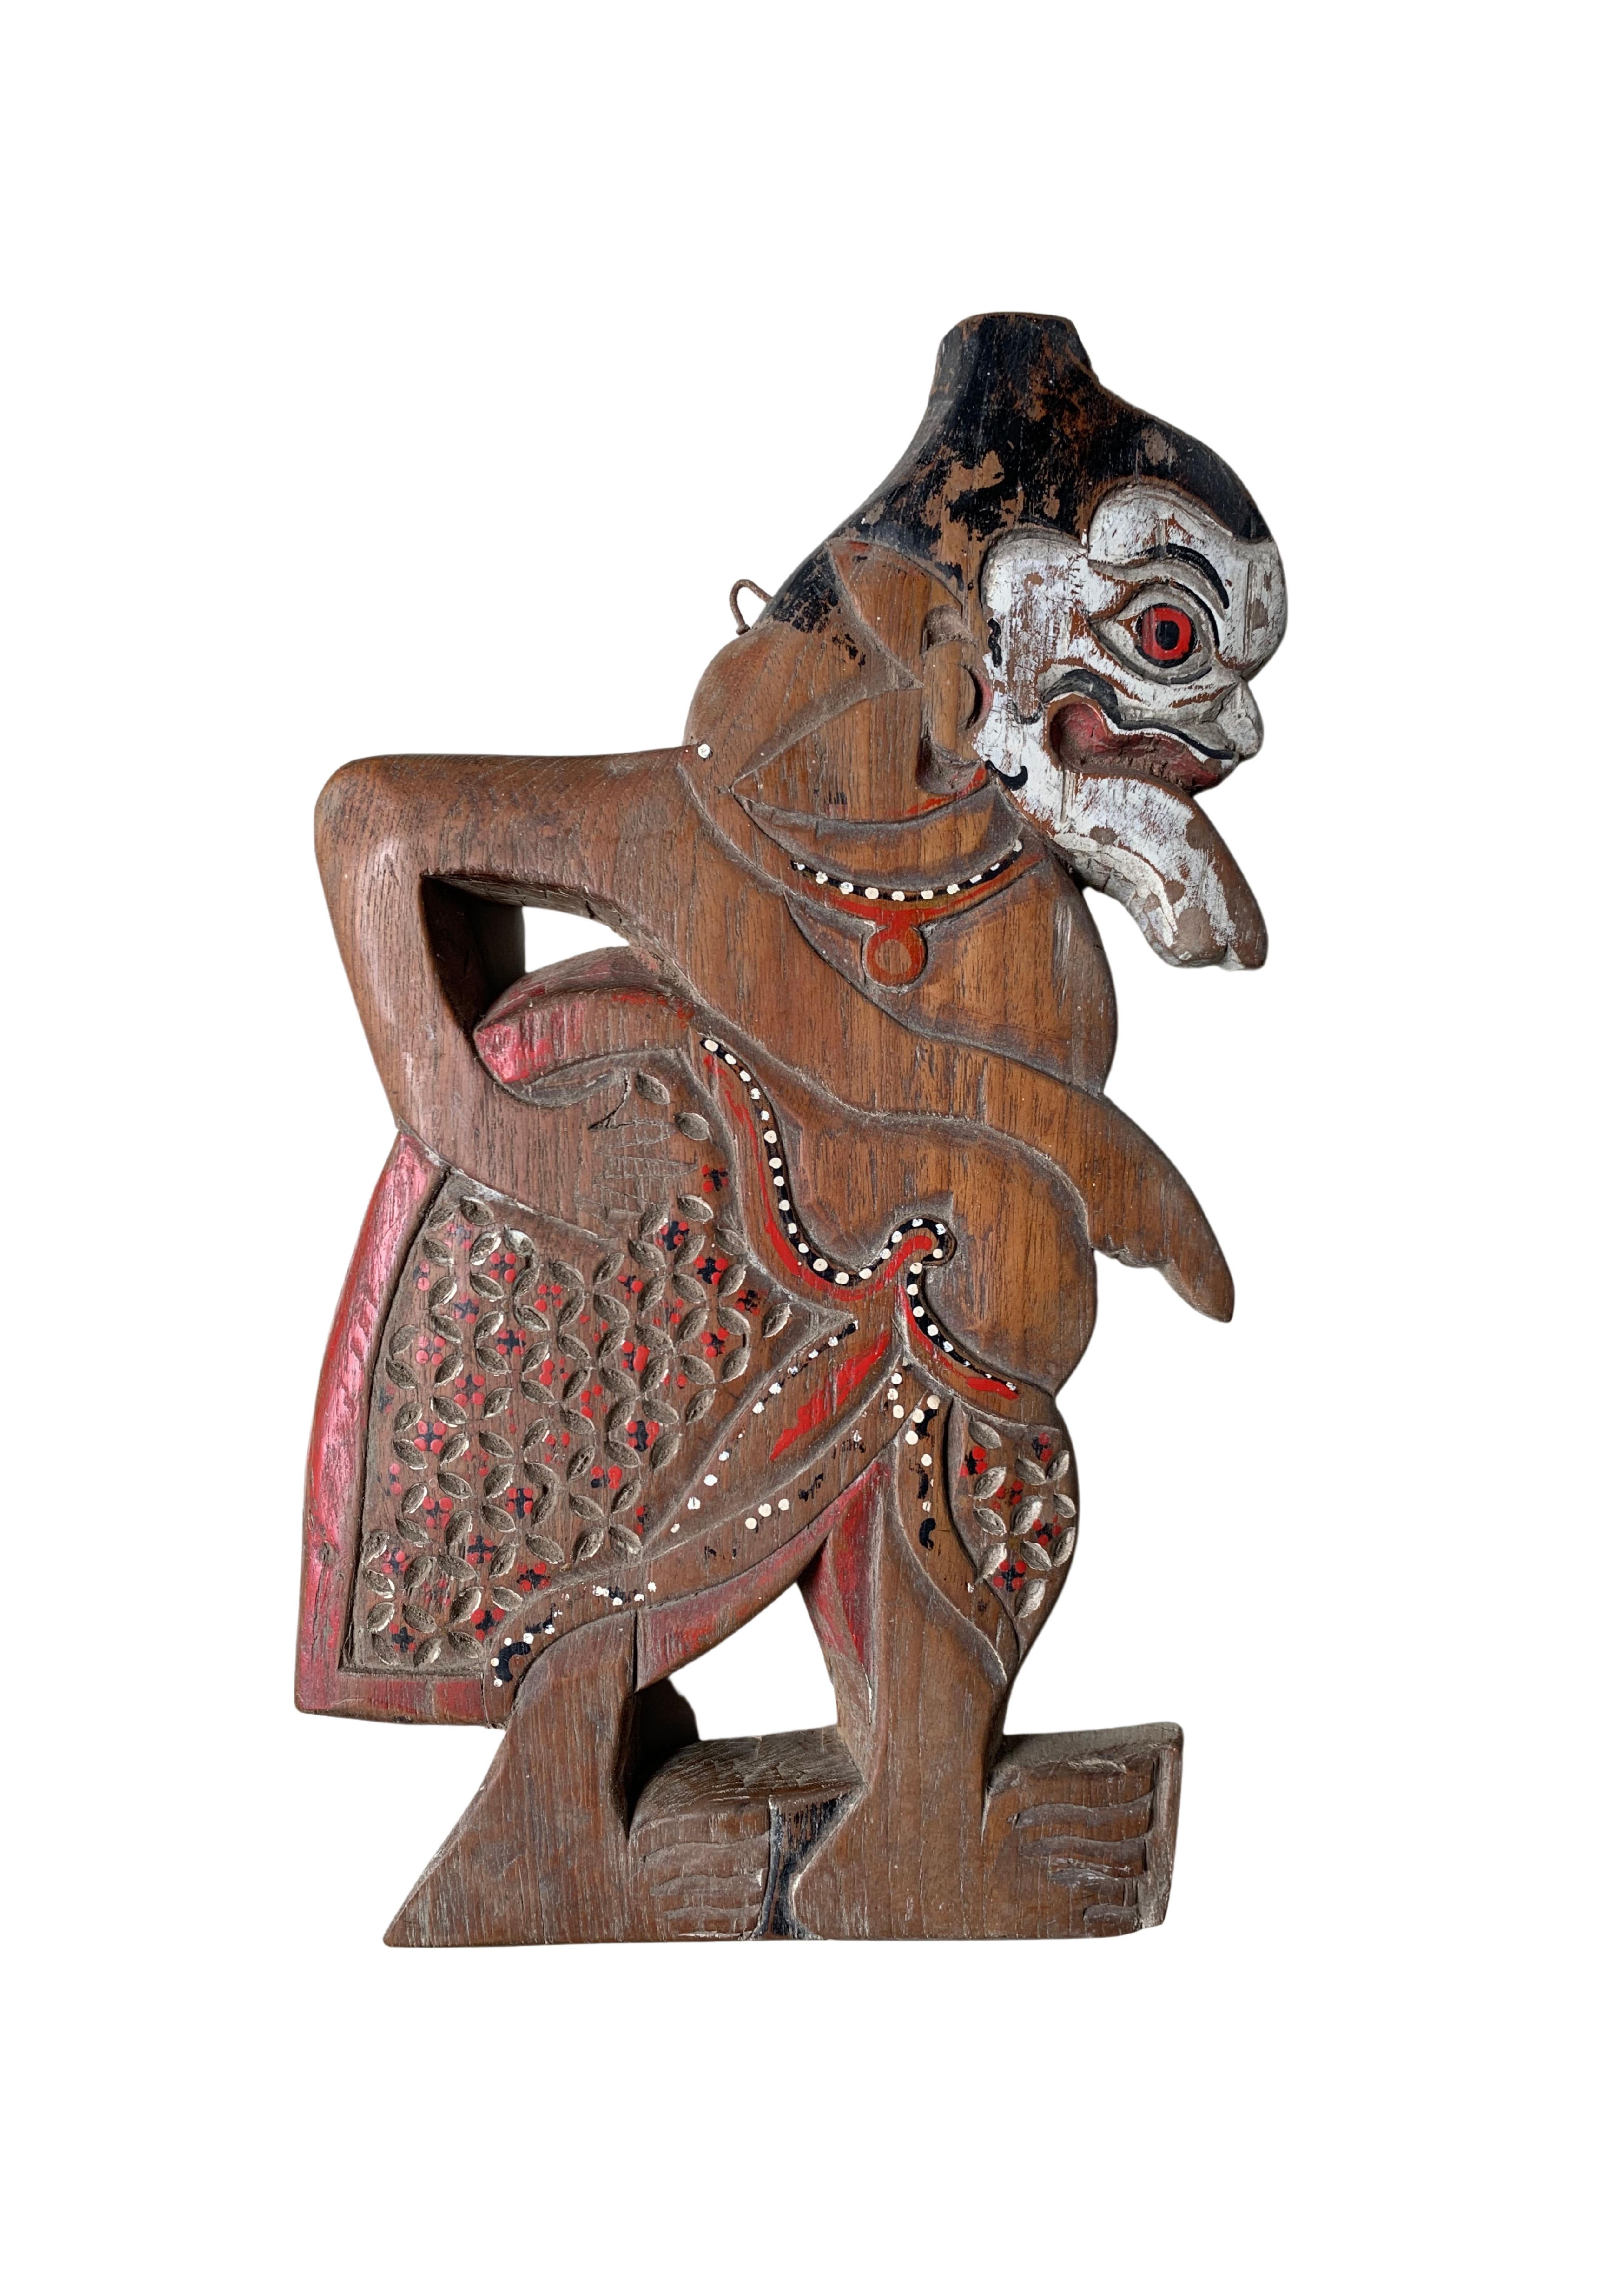 Cet ensemble de sculptures en bois représente des personnages mythiques populaires dans les spectacles de marionnettes 